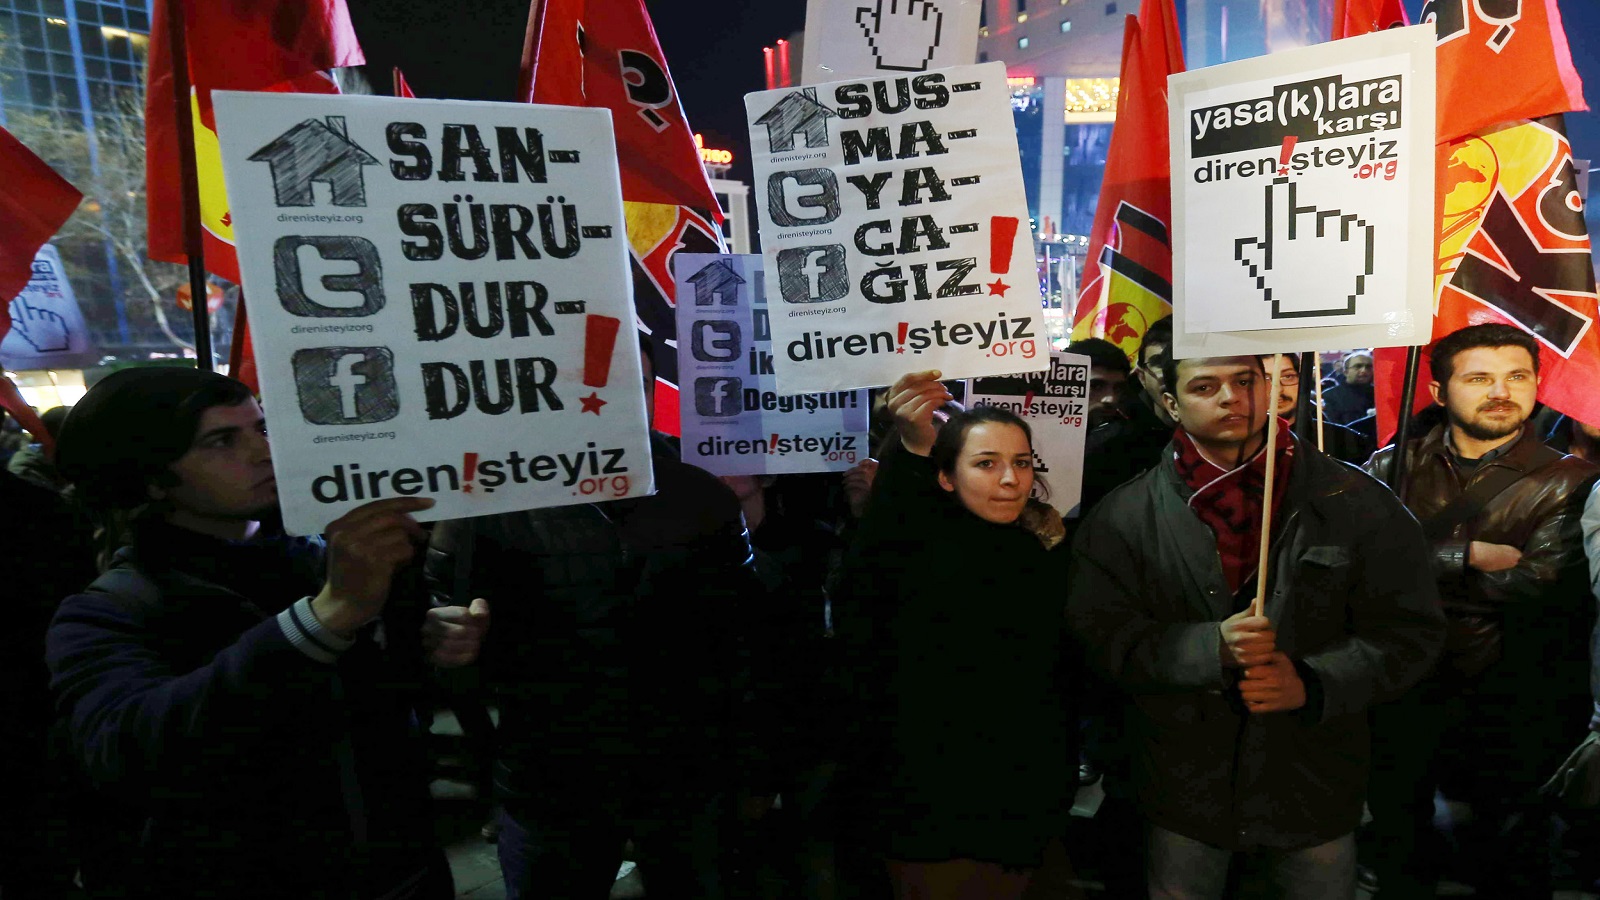 البرلمان التركي يُقرّ رقابة الحكومة على الانترنت